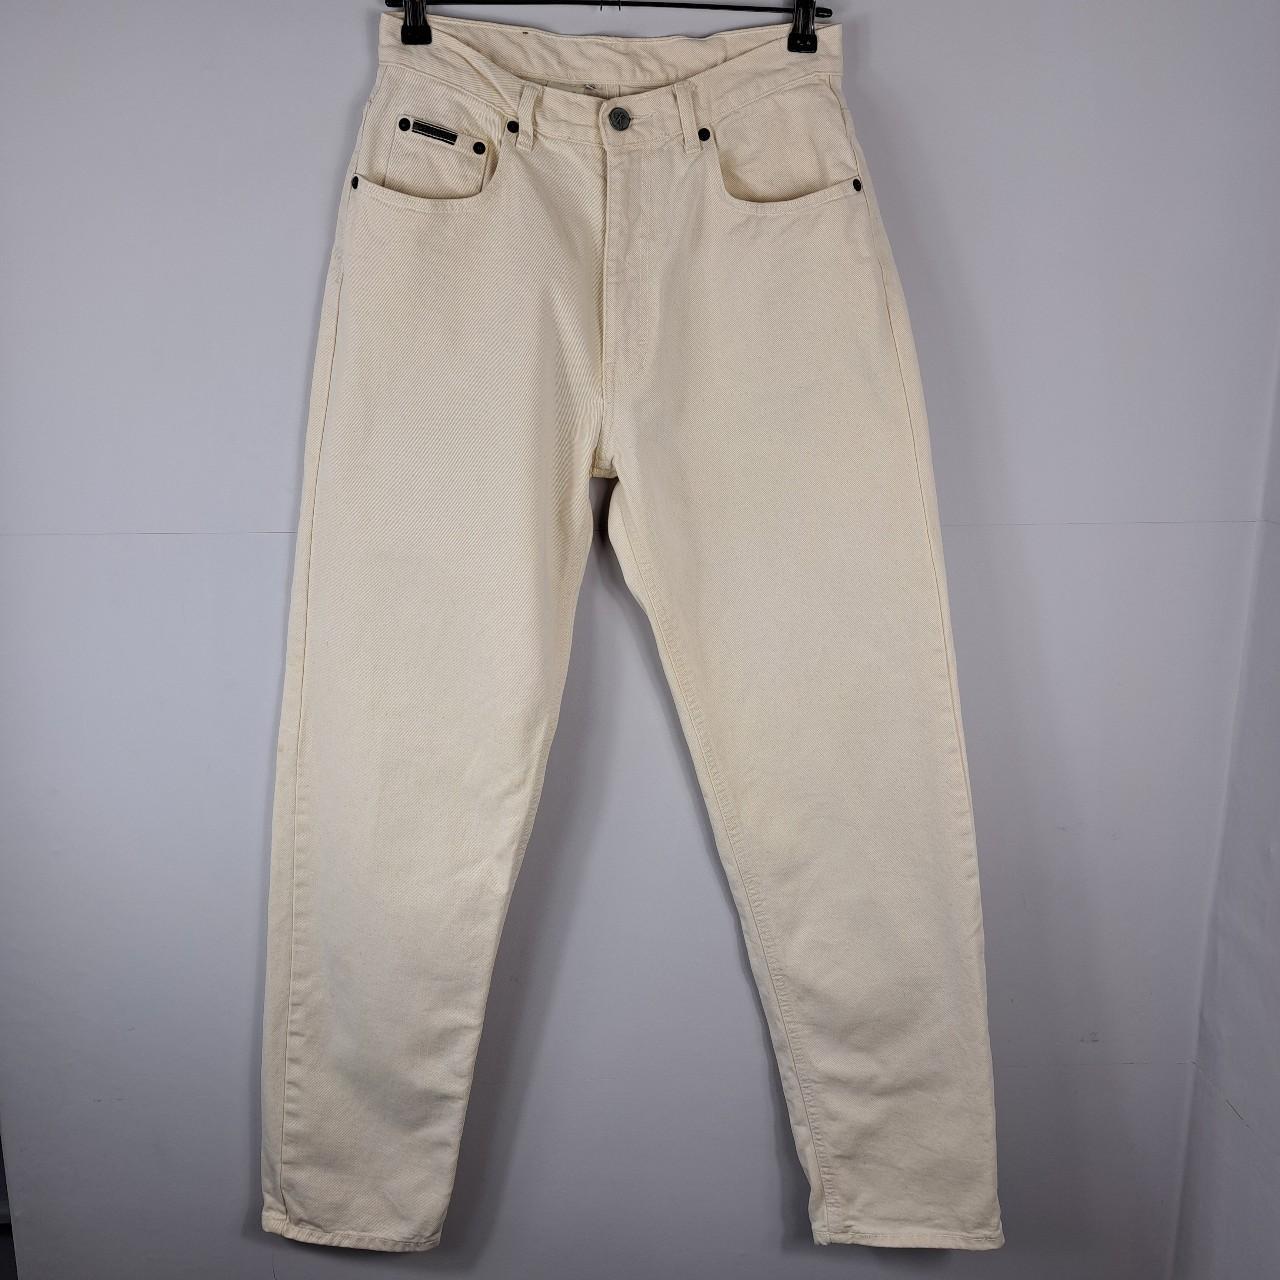 Calvin Klein 90's cream jeans. Size 31. Shown on... - Depop